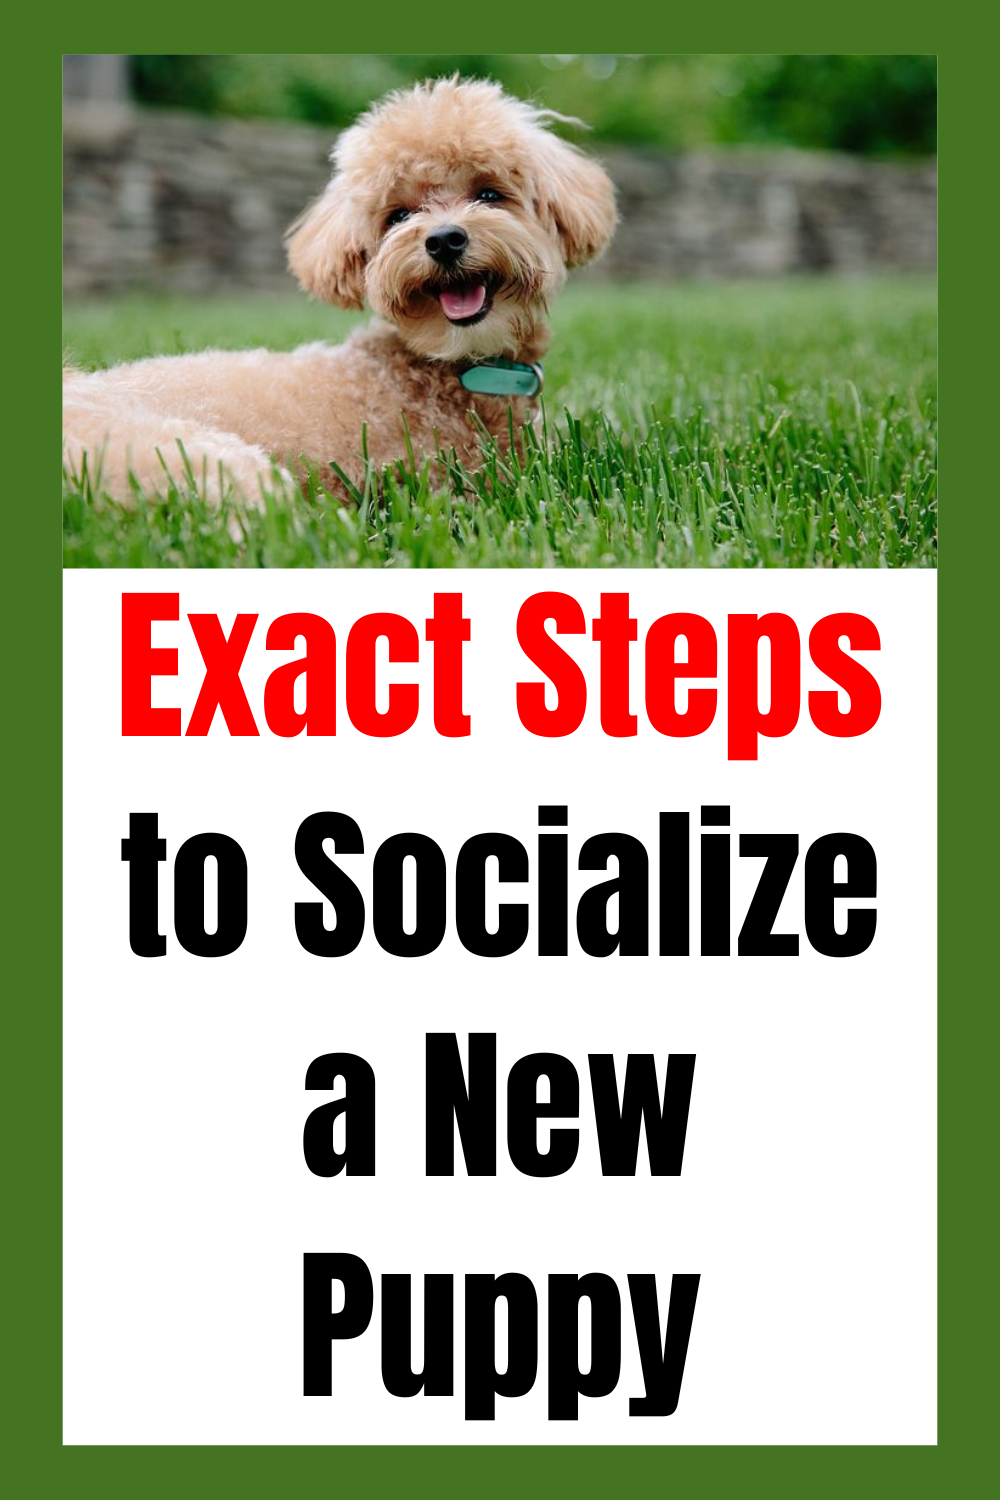 puppy socialization steps